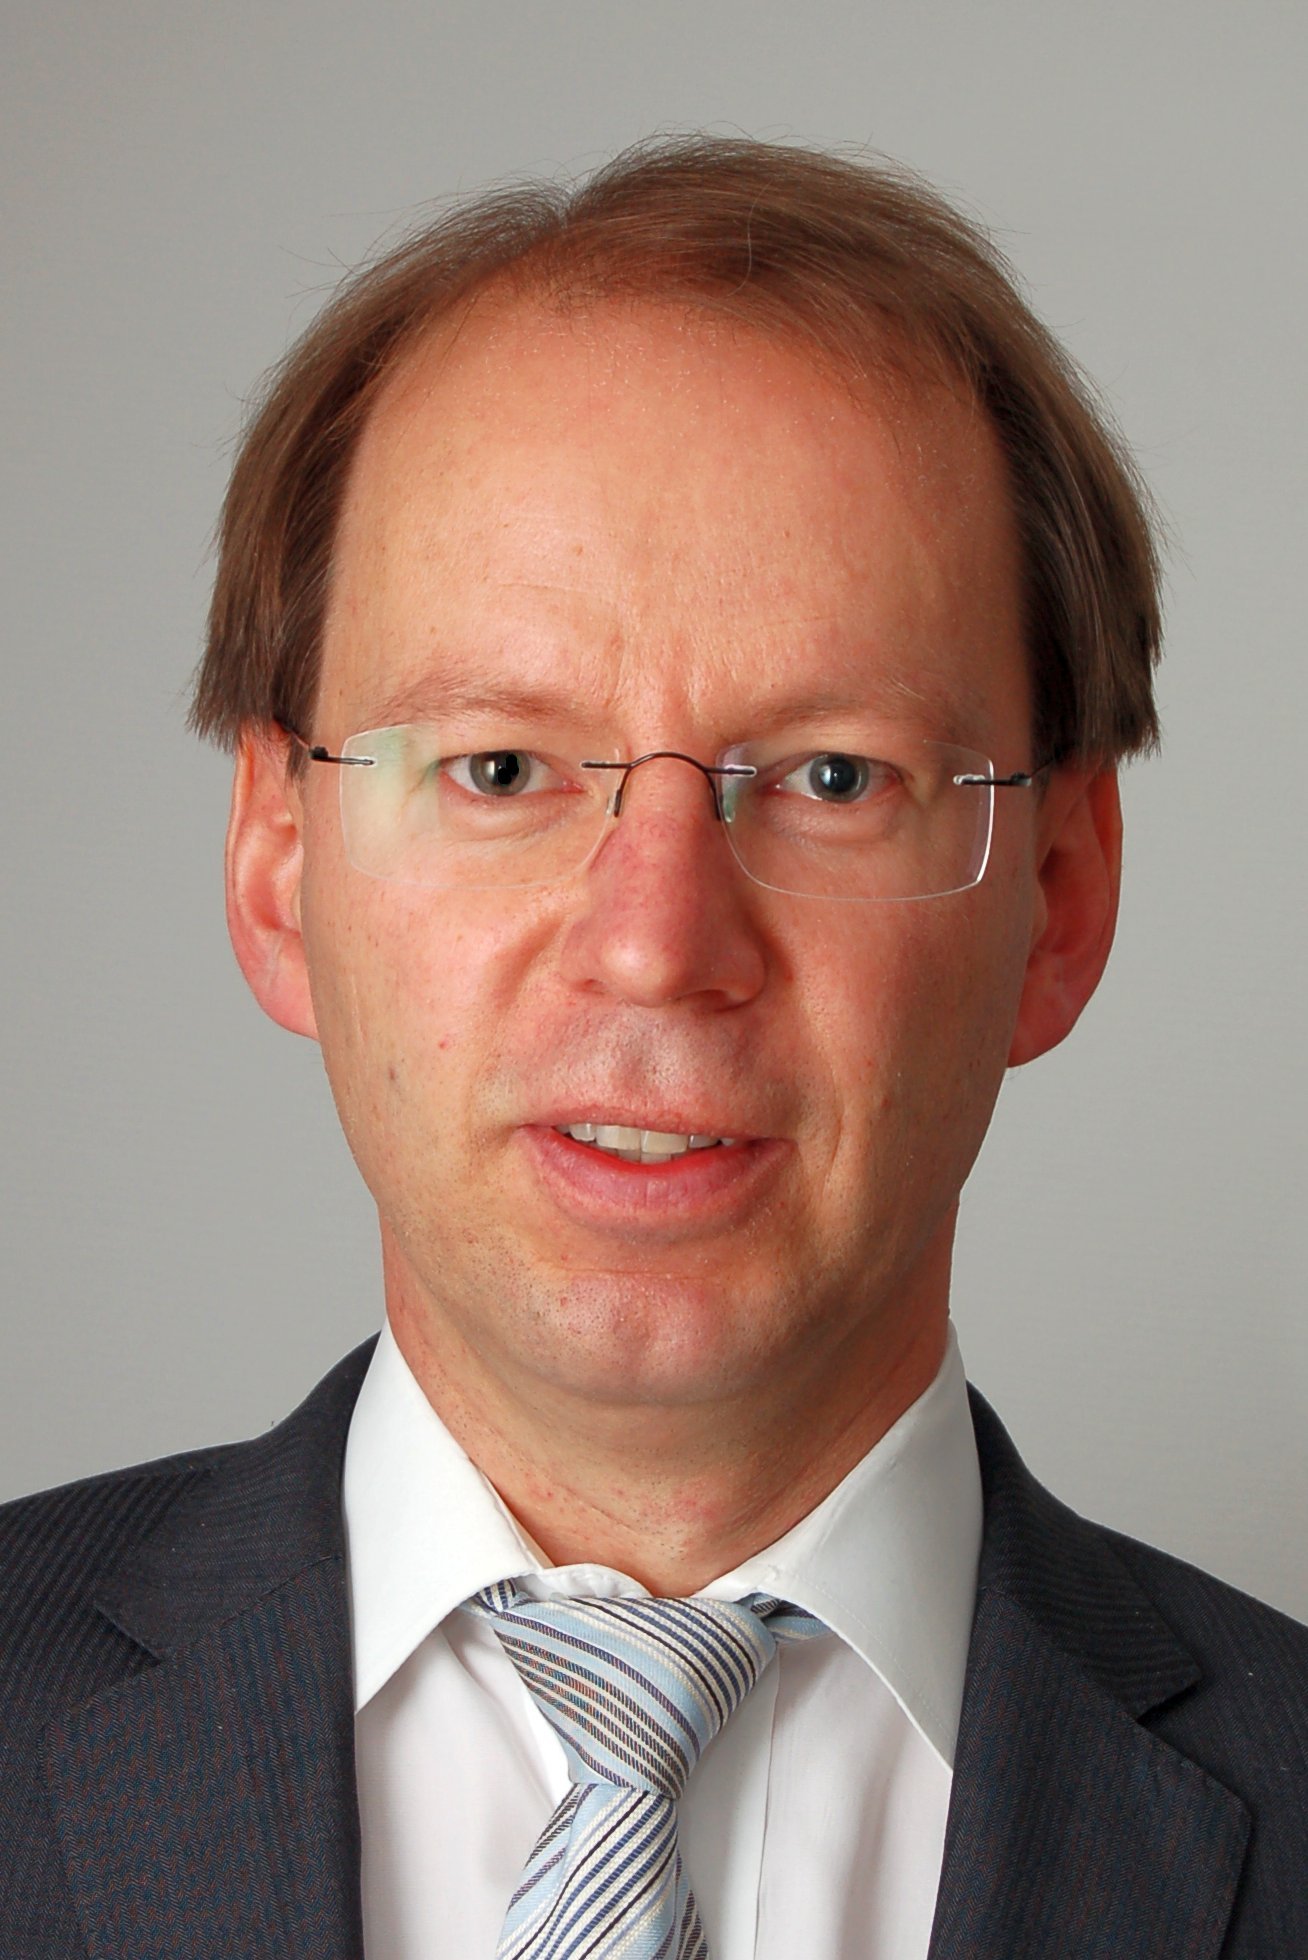 Dr. Henrik Imhof